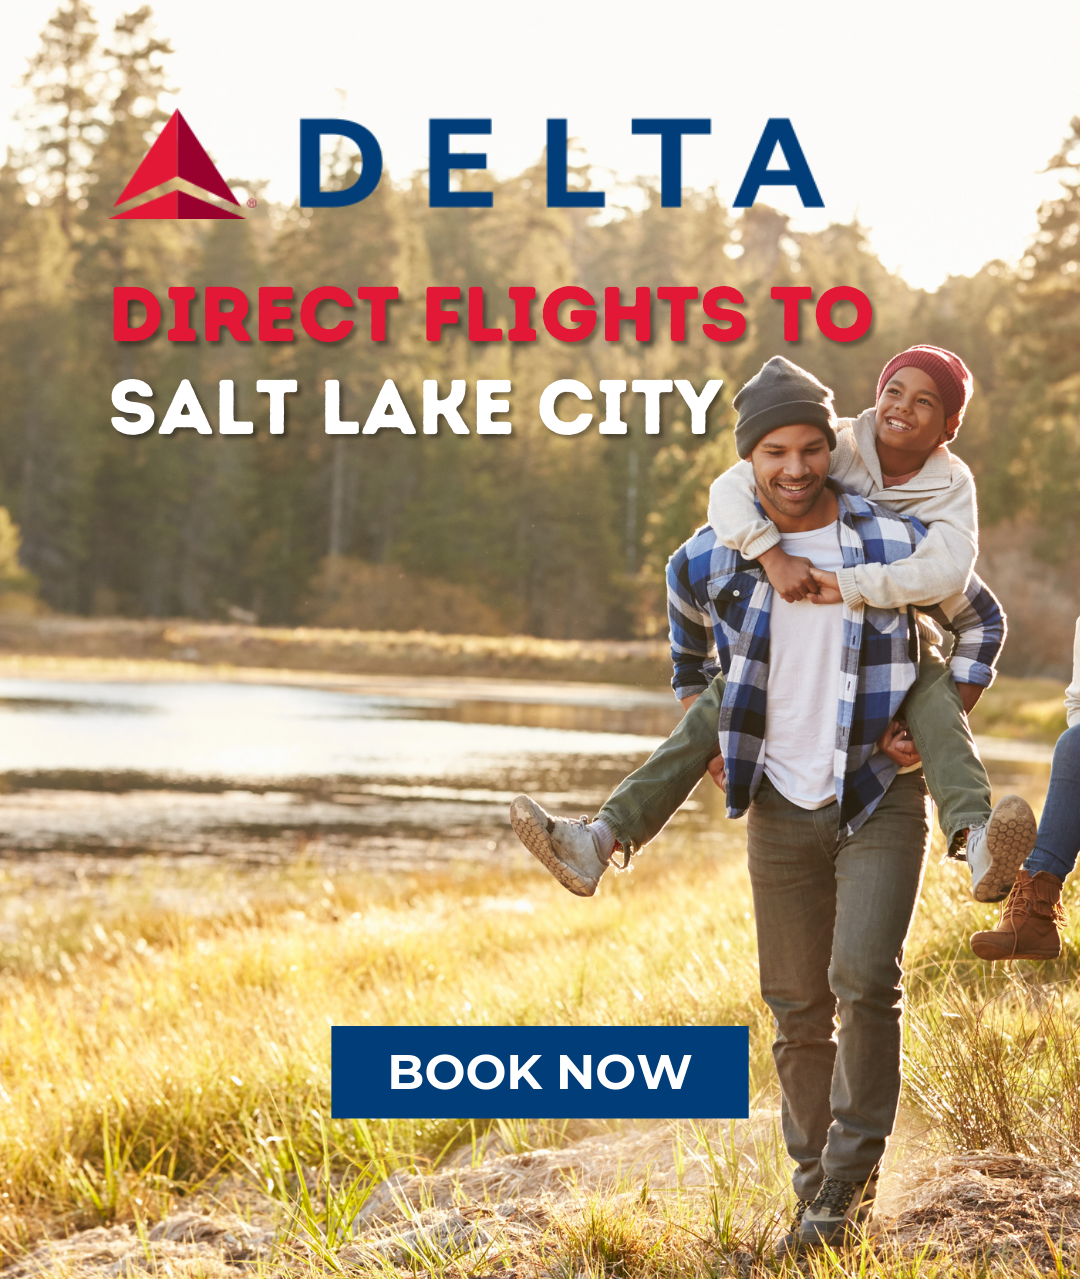 Delta Direct flights